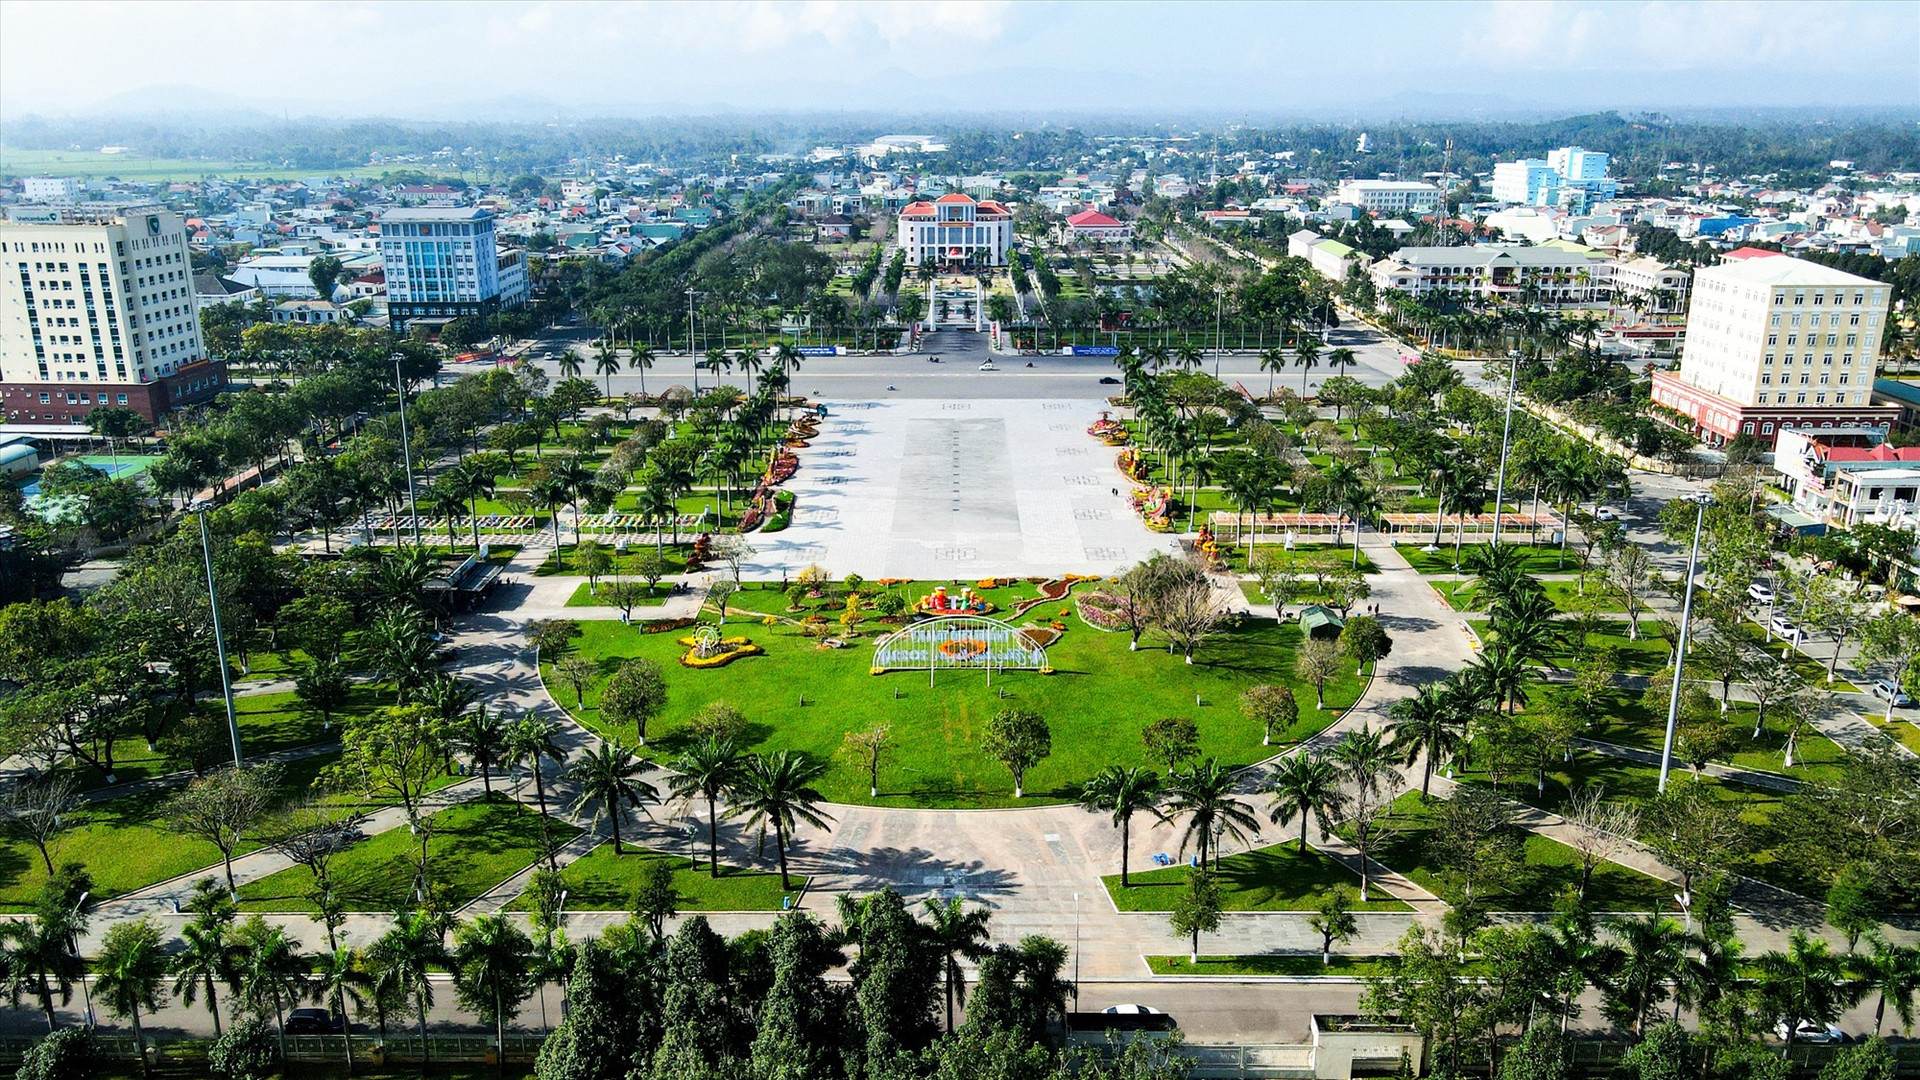 Tam Kỳ trong tương lai sẽ trở thành đô thị loại I trên cơ sở sáp nhập 3 địa phương Tam Kỳ - Núi Thành - Phú Ninh. Ảnh: C.T